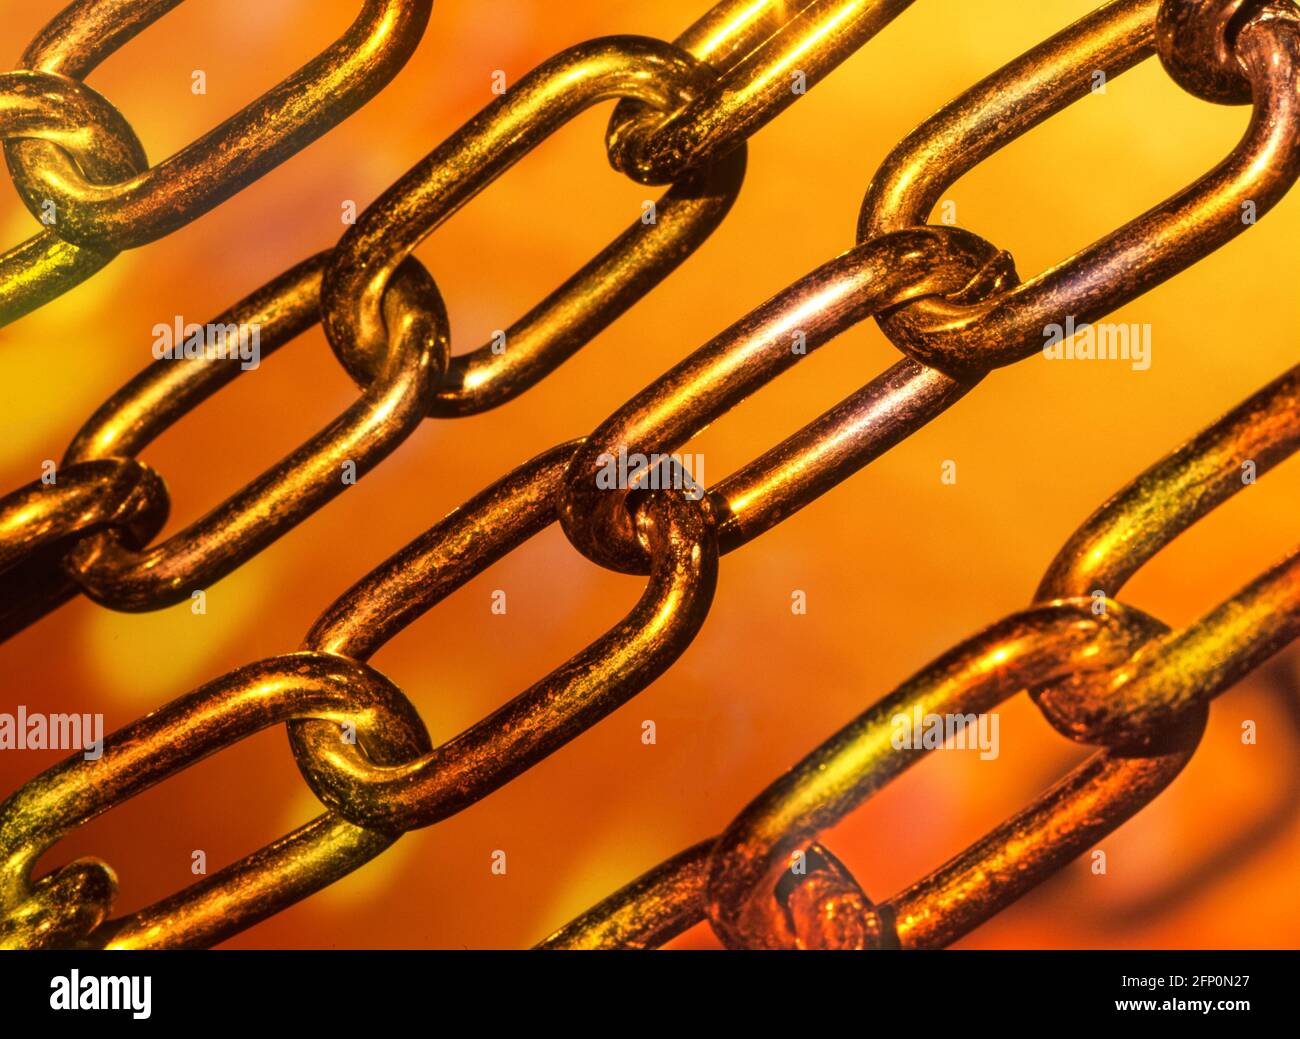 Immagine del concept close-up colorato delle maglie della catena in acciaio uniti insieme in un concetto di legame e collegamento di metallo idea di forza e sicurezza Foto Stock